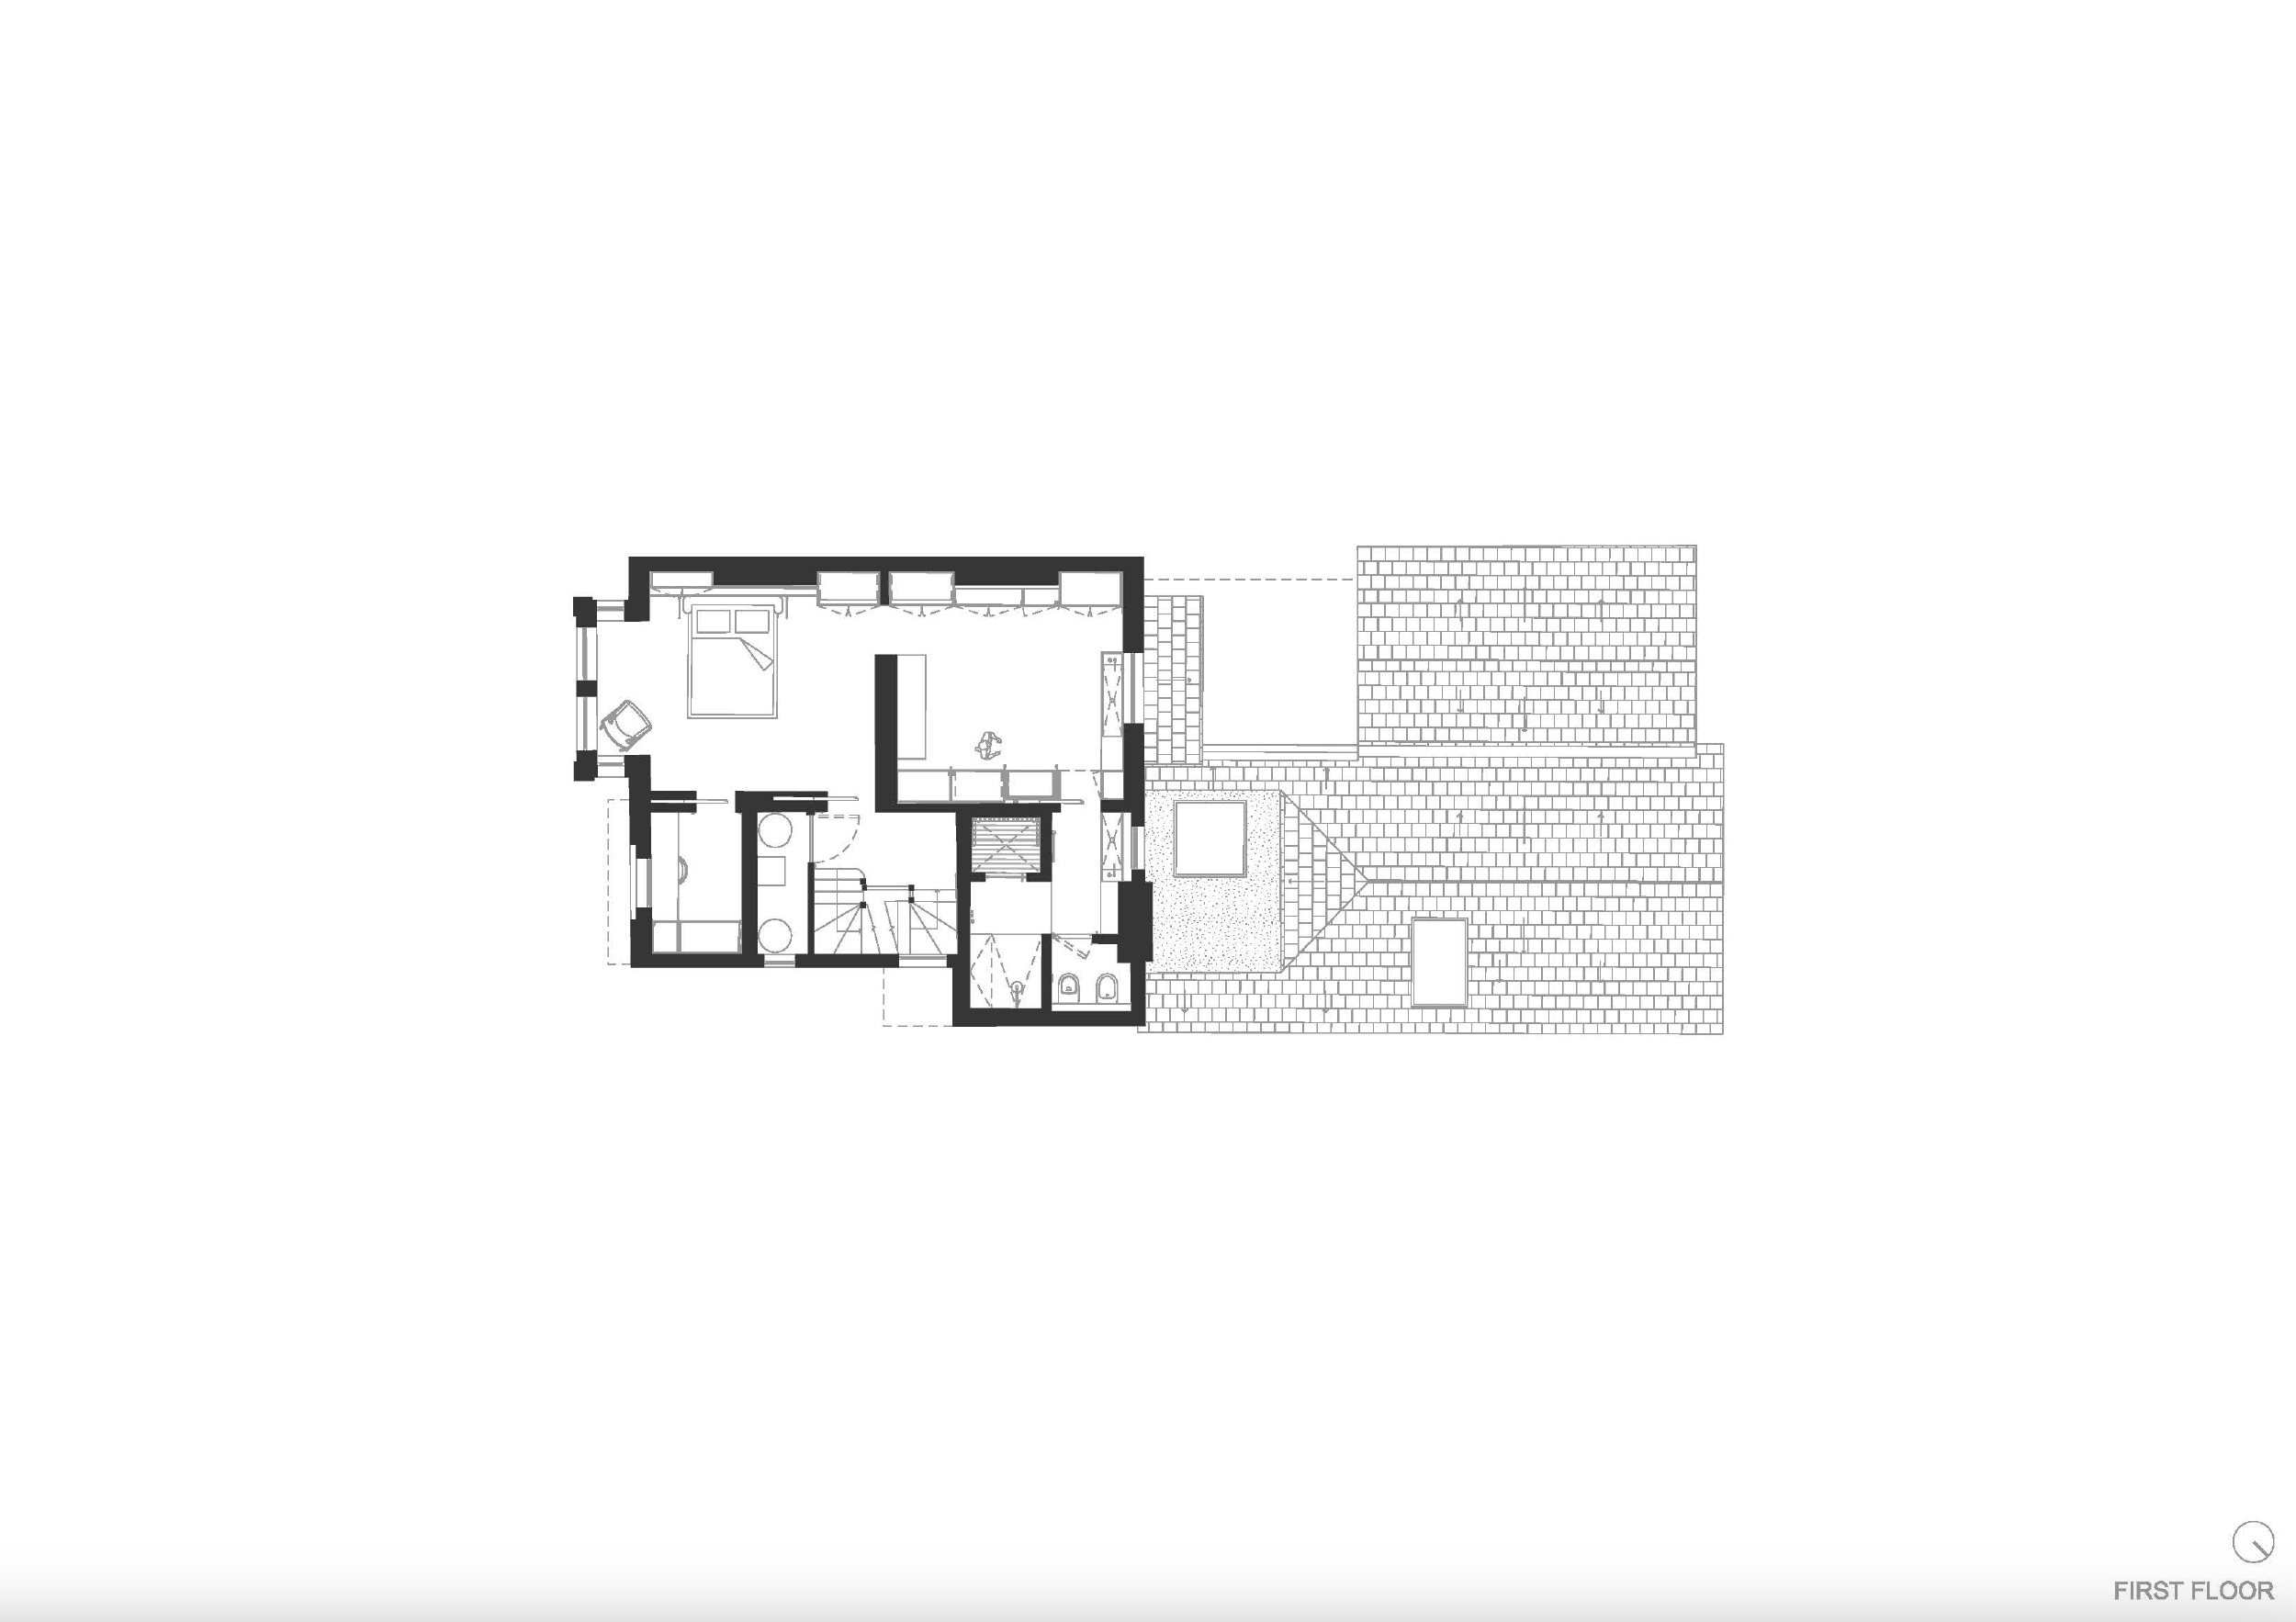 mclaren excell henley house floor plan first floor 170